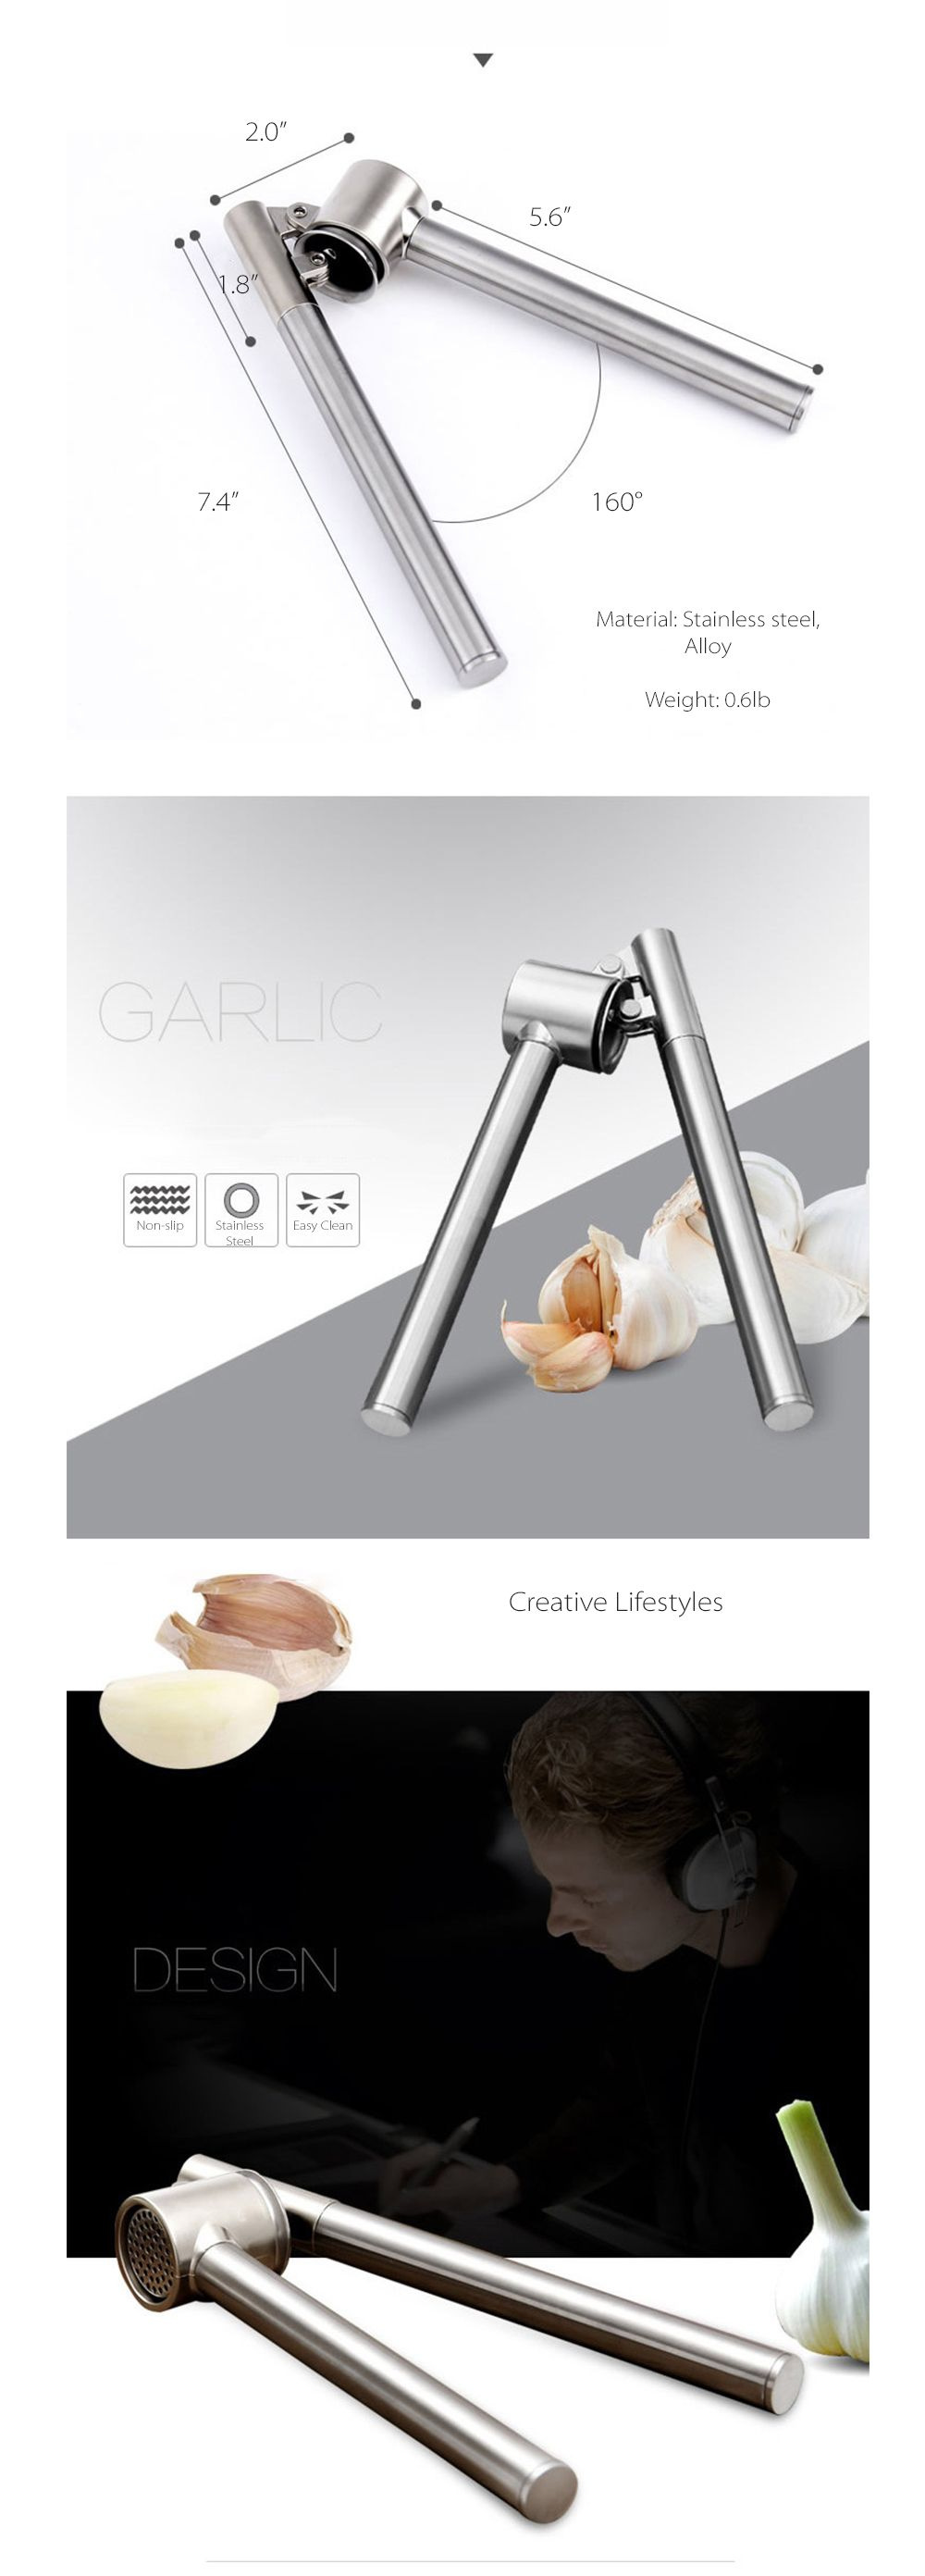 Brix Design A/S  Garlic Press